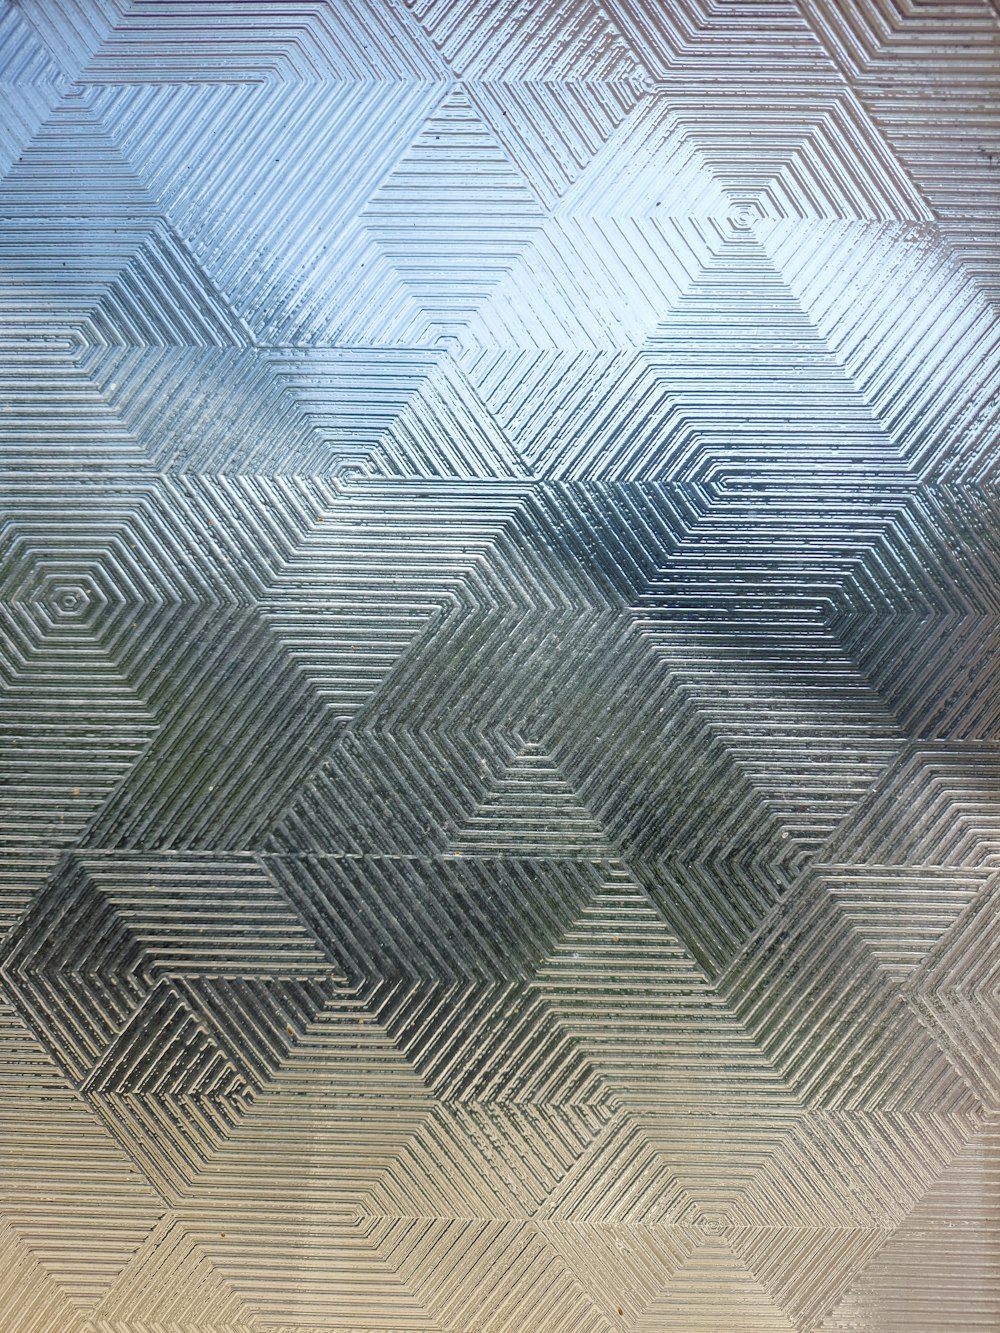 Una imagen borrosa de un patrón de diamante en una ventana